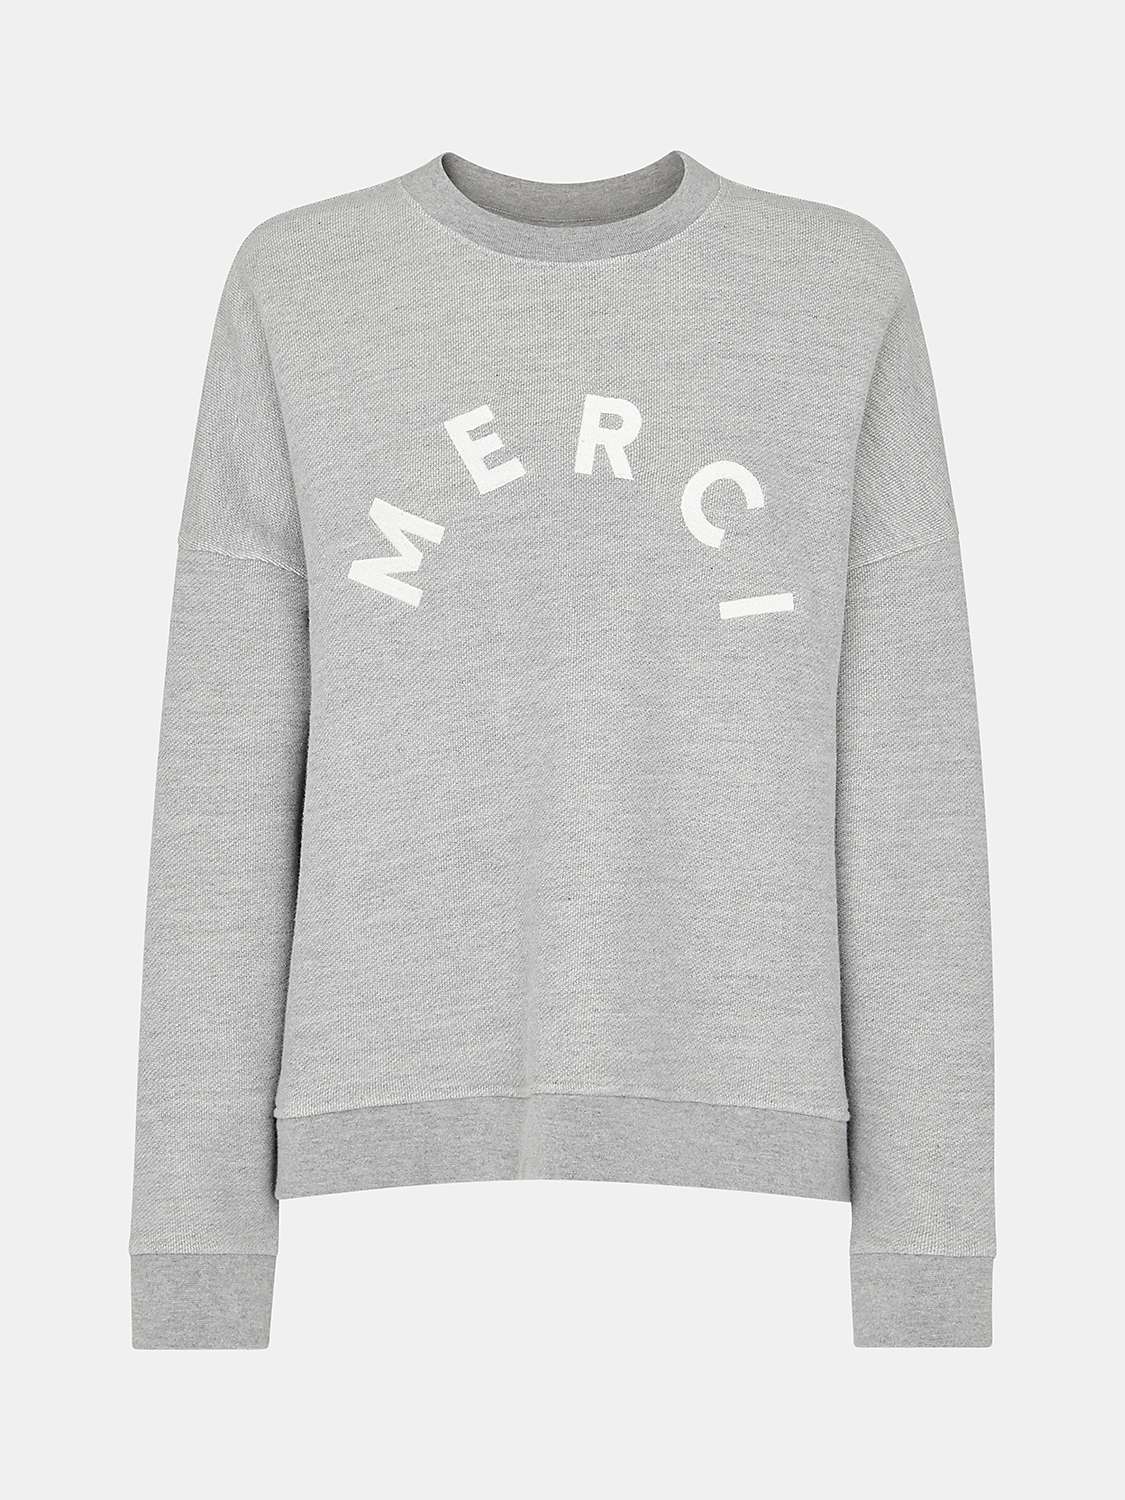 Buy Whistles Merci Logo Sweatshirt, Grey Online at johnlewis.com